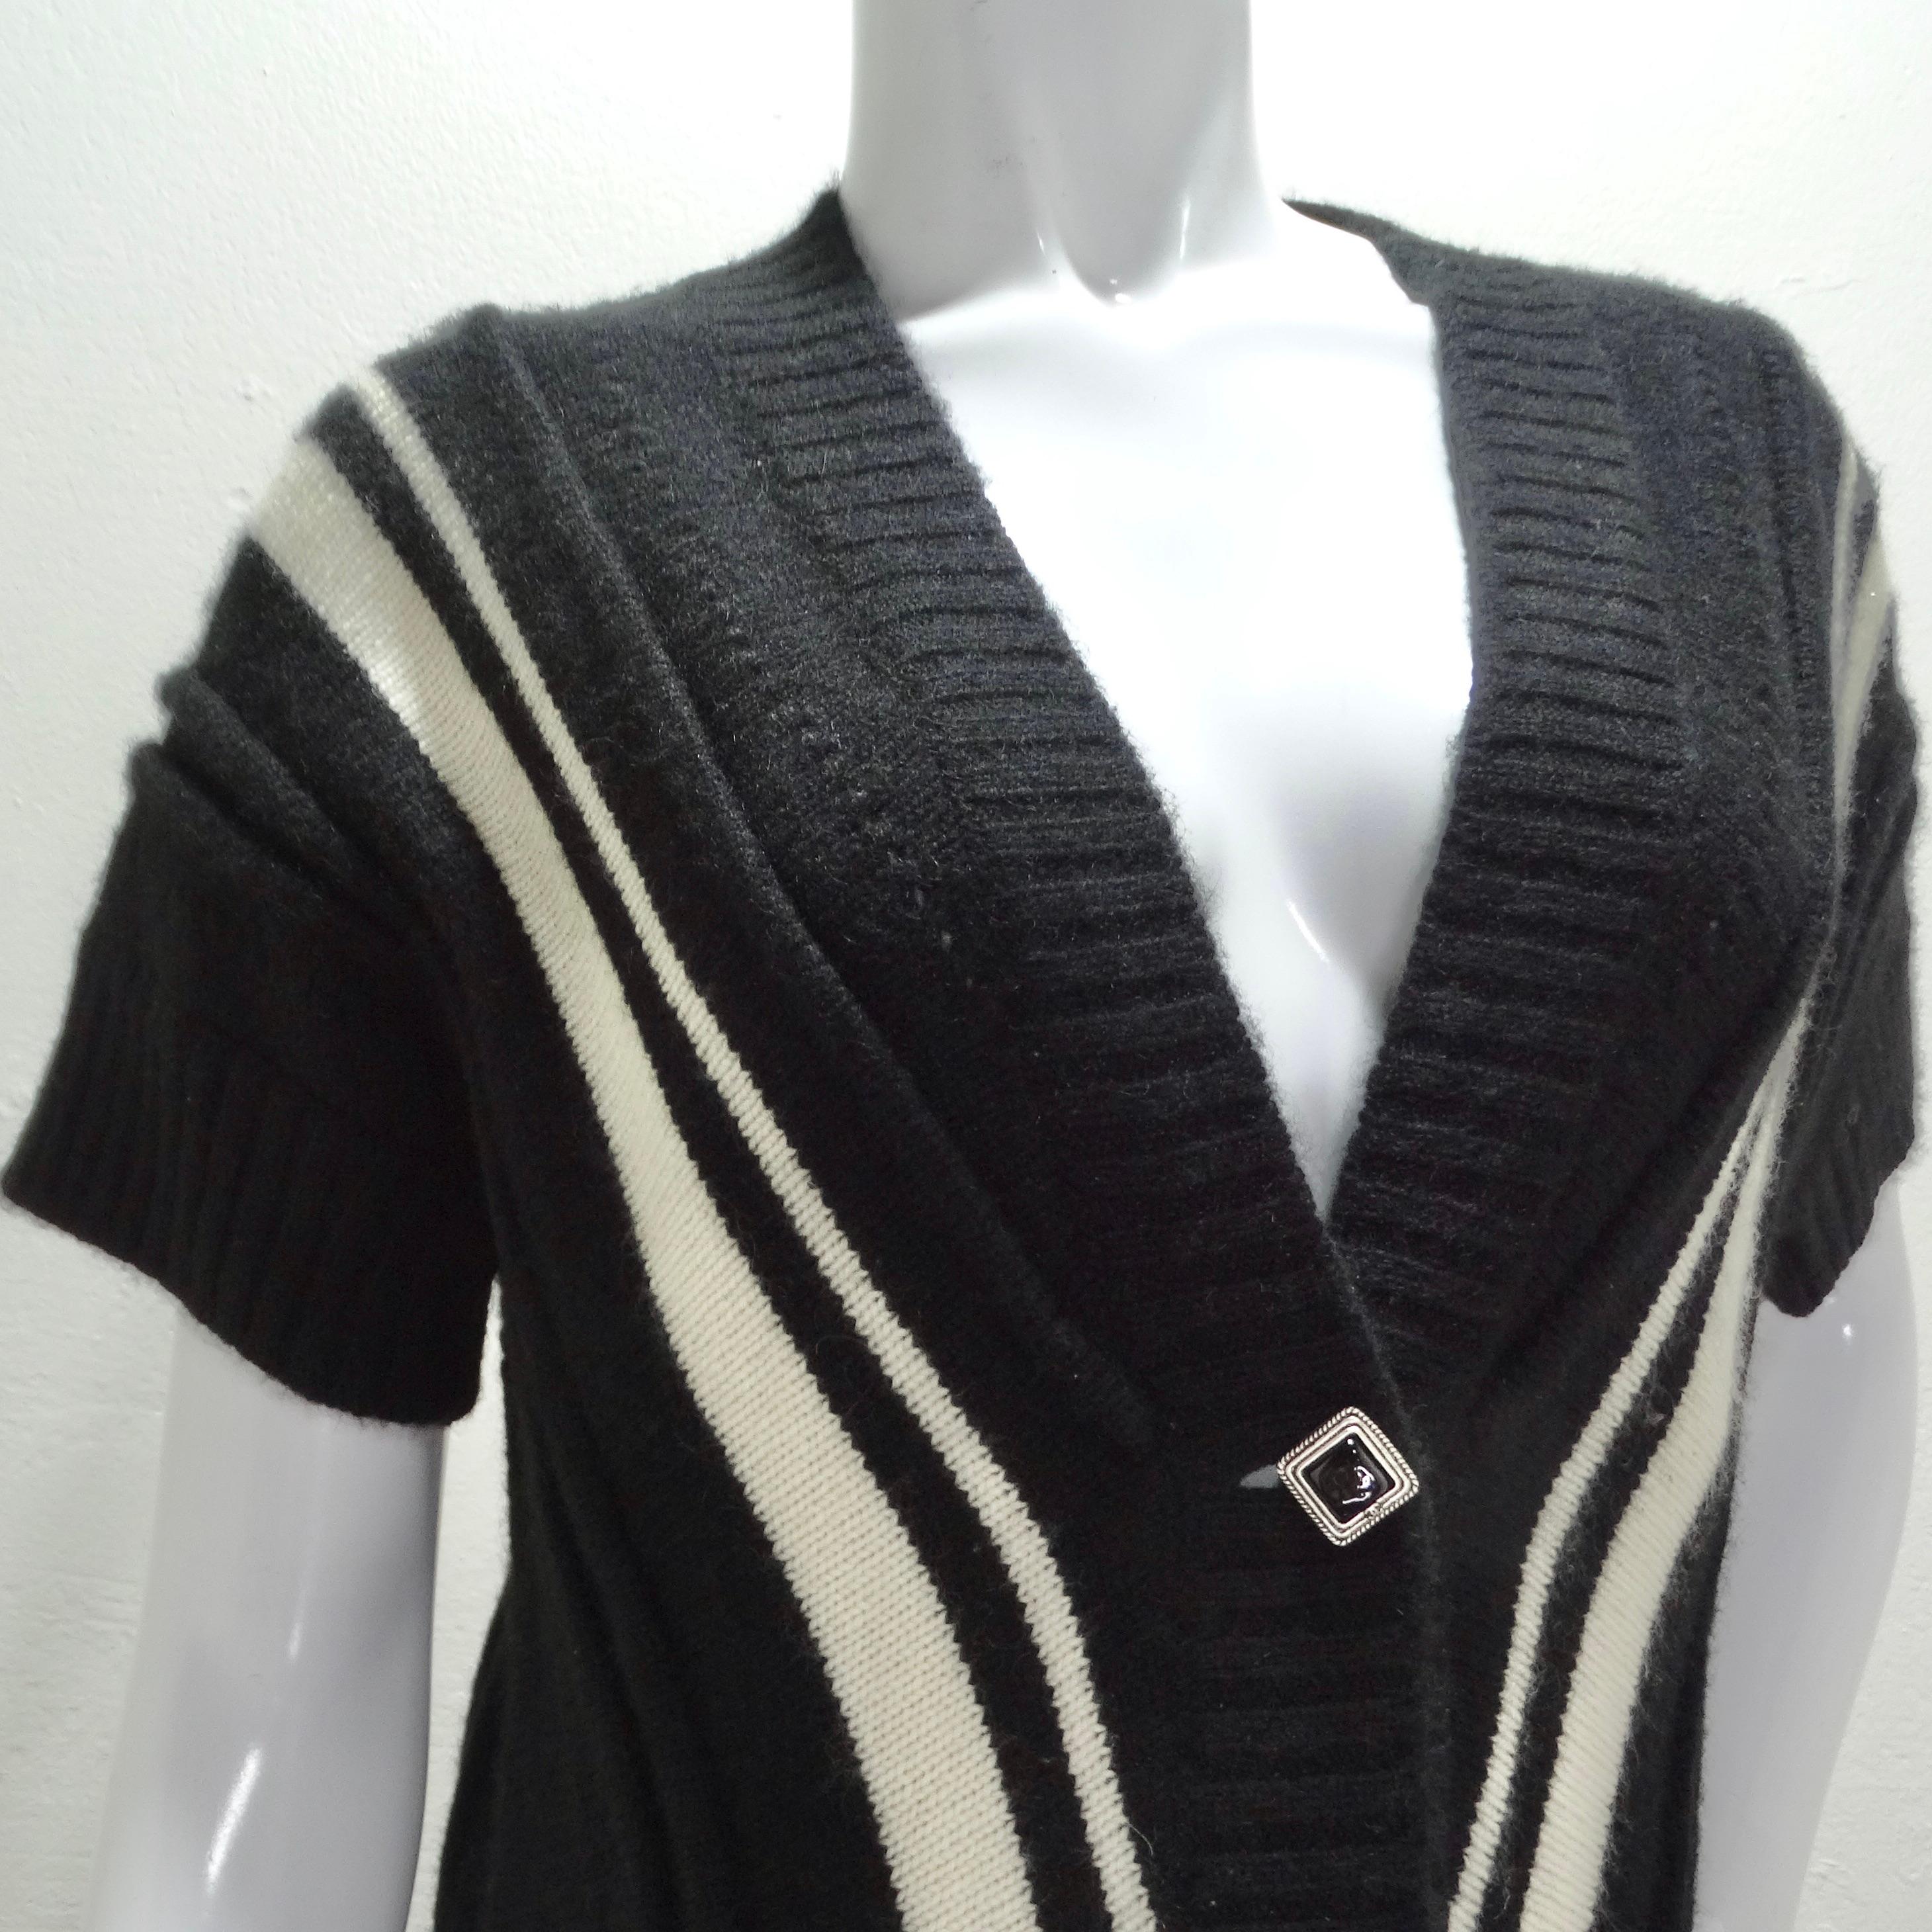 Das Chanel 2008 Chevron Knit Mini Dress ist ein schickes und vielseitiges Kleidungsstück, das die Eleganz und die Liebe zum Detail der Kultmarke widerspiegelt. Dieses Minikleid aus einer luxuriösen Kaschmir-Mohair-Mischung bietet ein weiches und